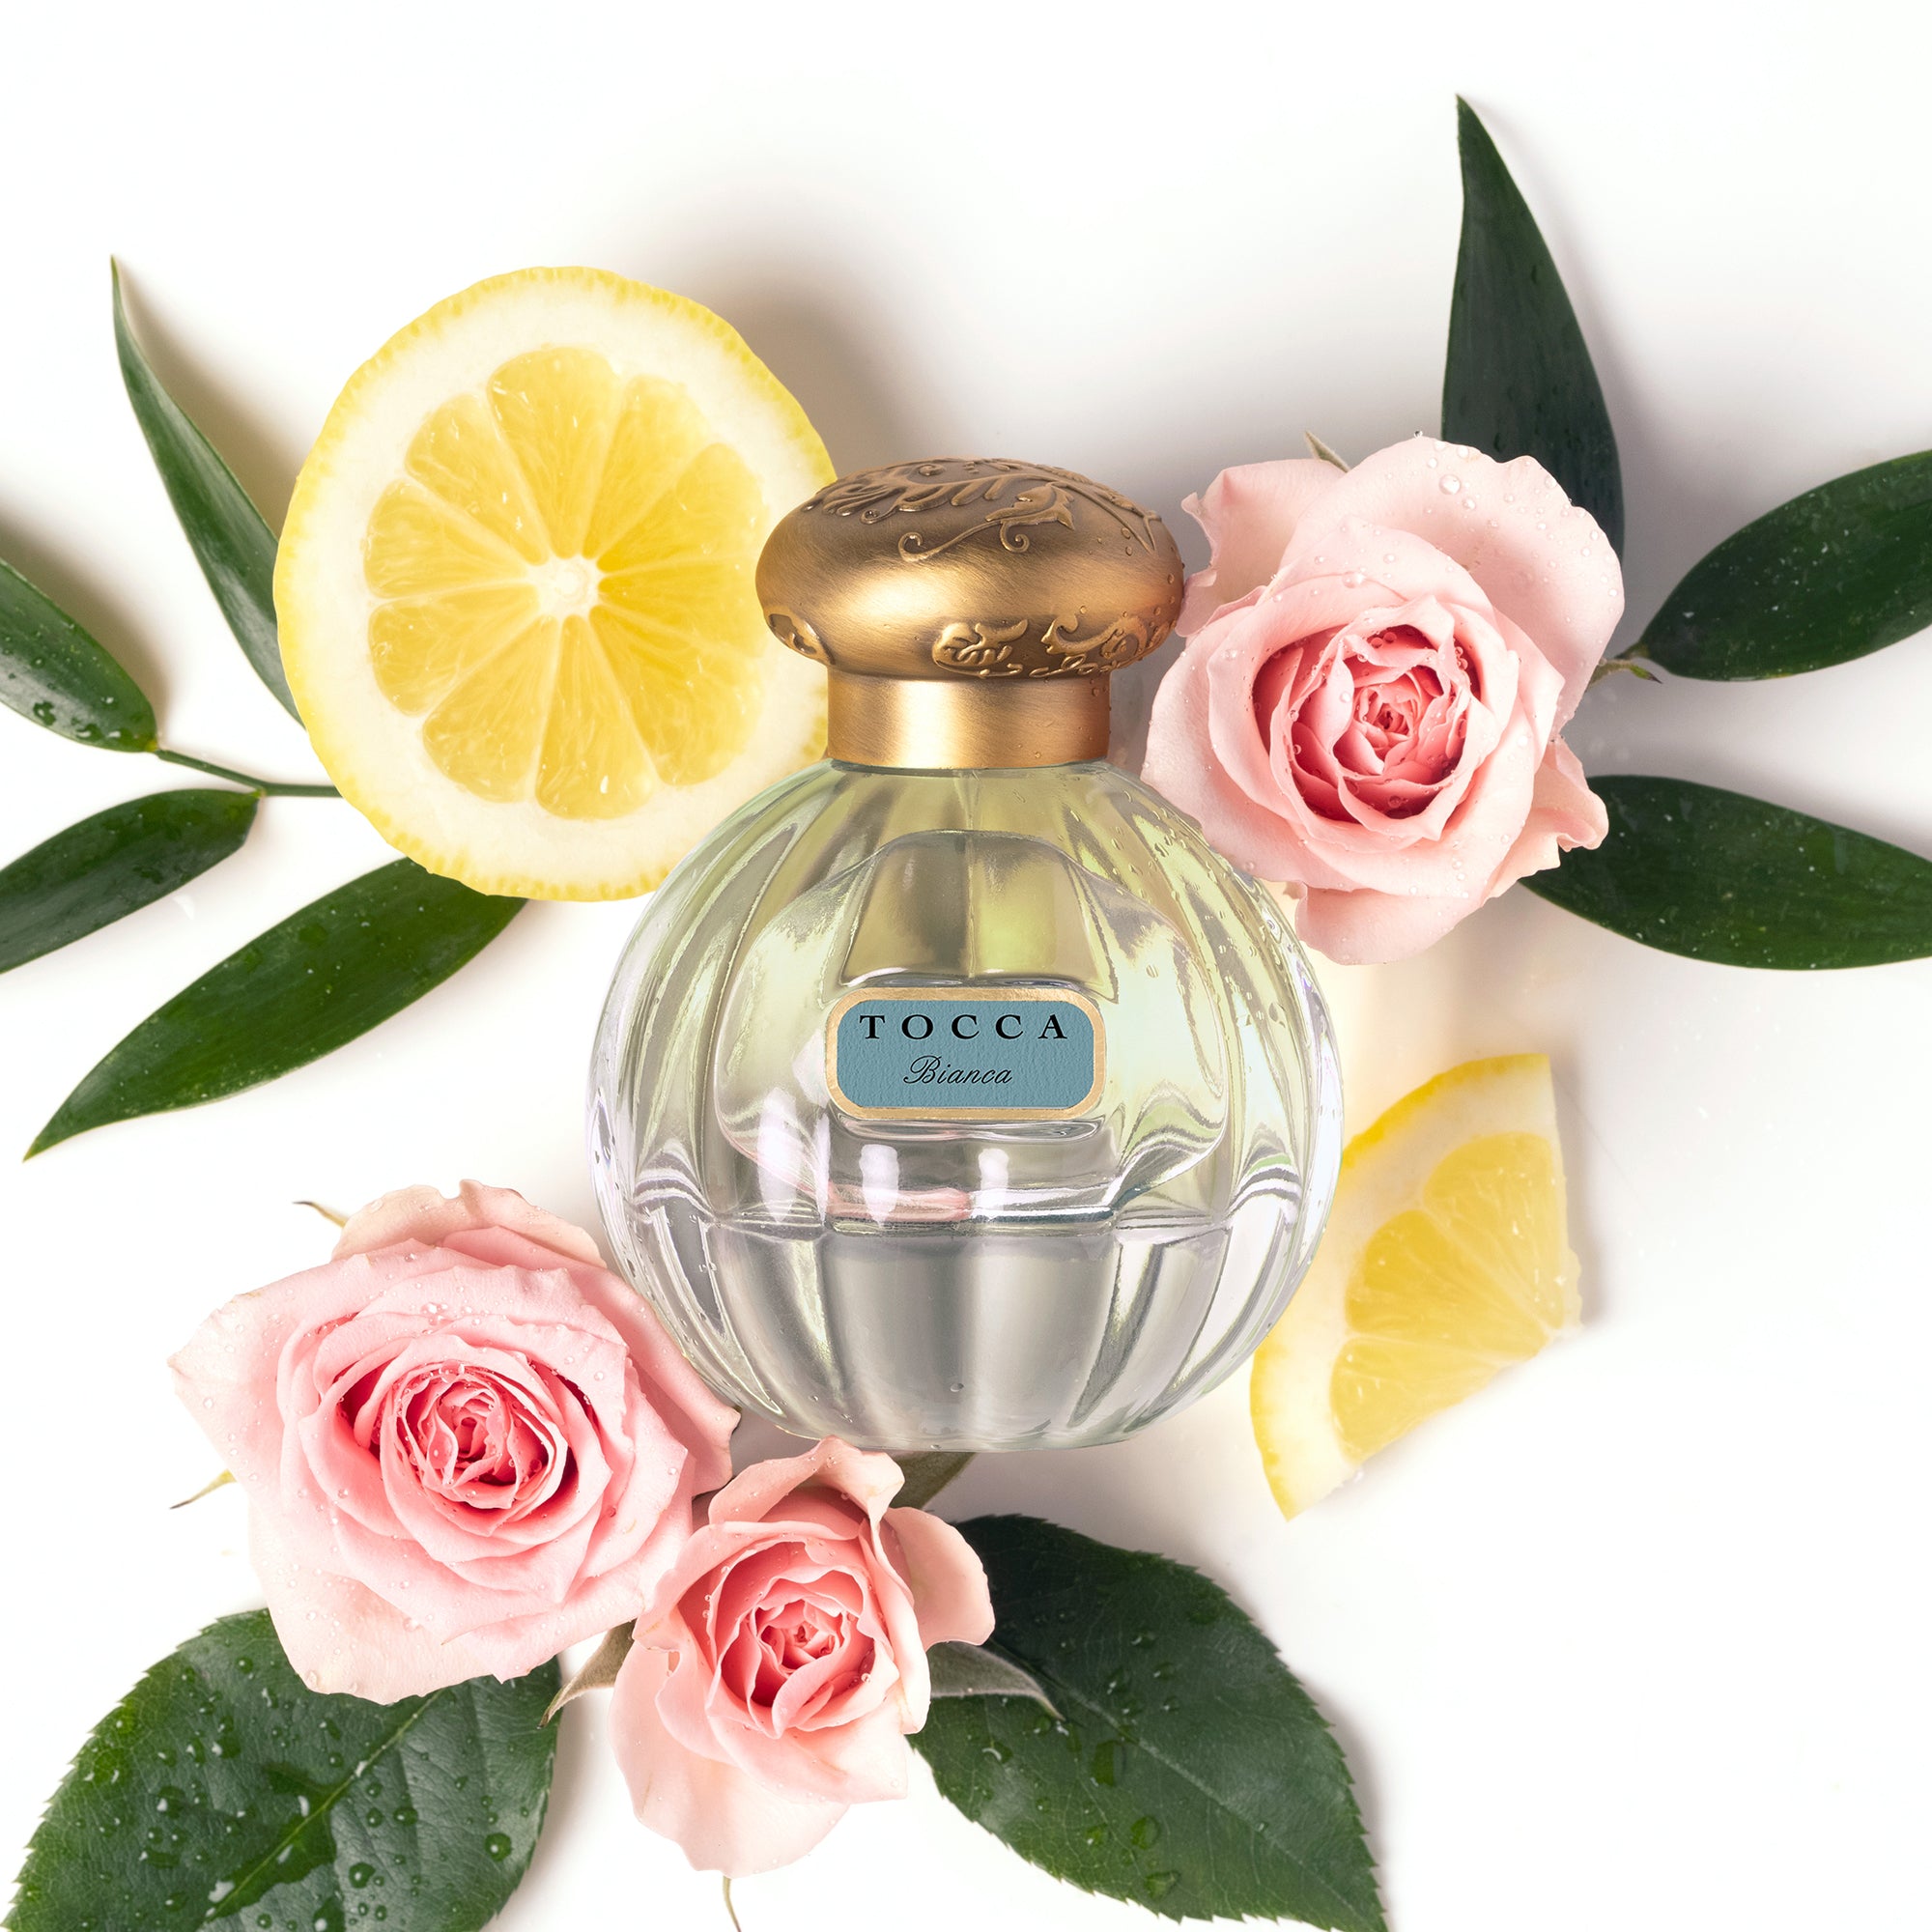 Tocca Fine Fragrances Eau de Parfum Bianca 50ml